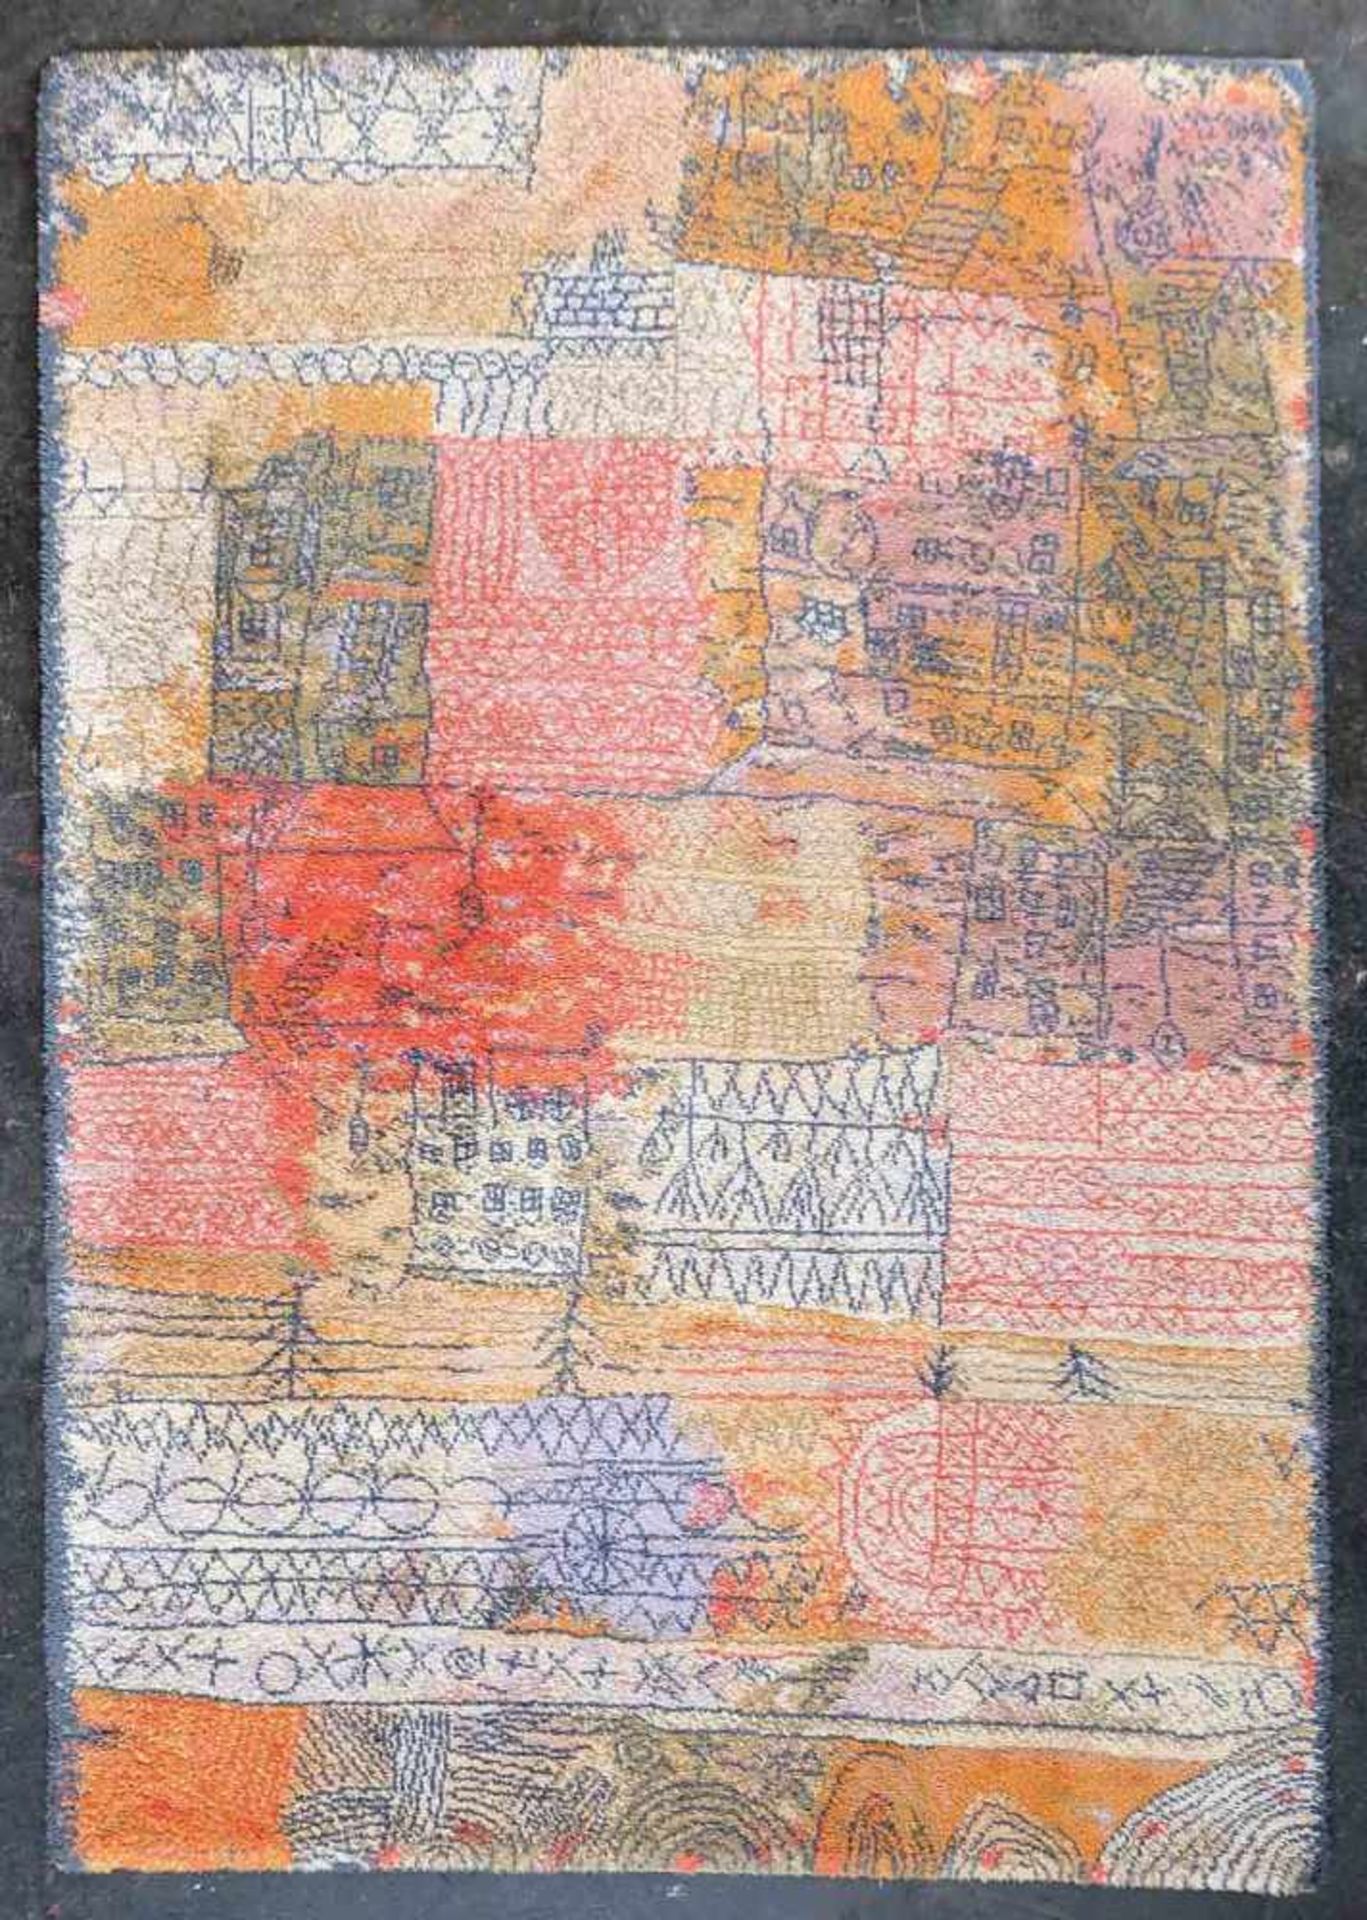 KÜNSTLERTEPPICH, nach Paul Klee, Manufaktur Ege Axminster A/S/ Dänemark, "Florentinisches